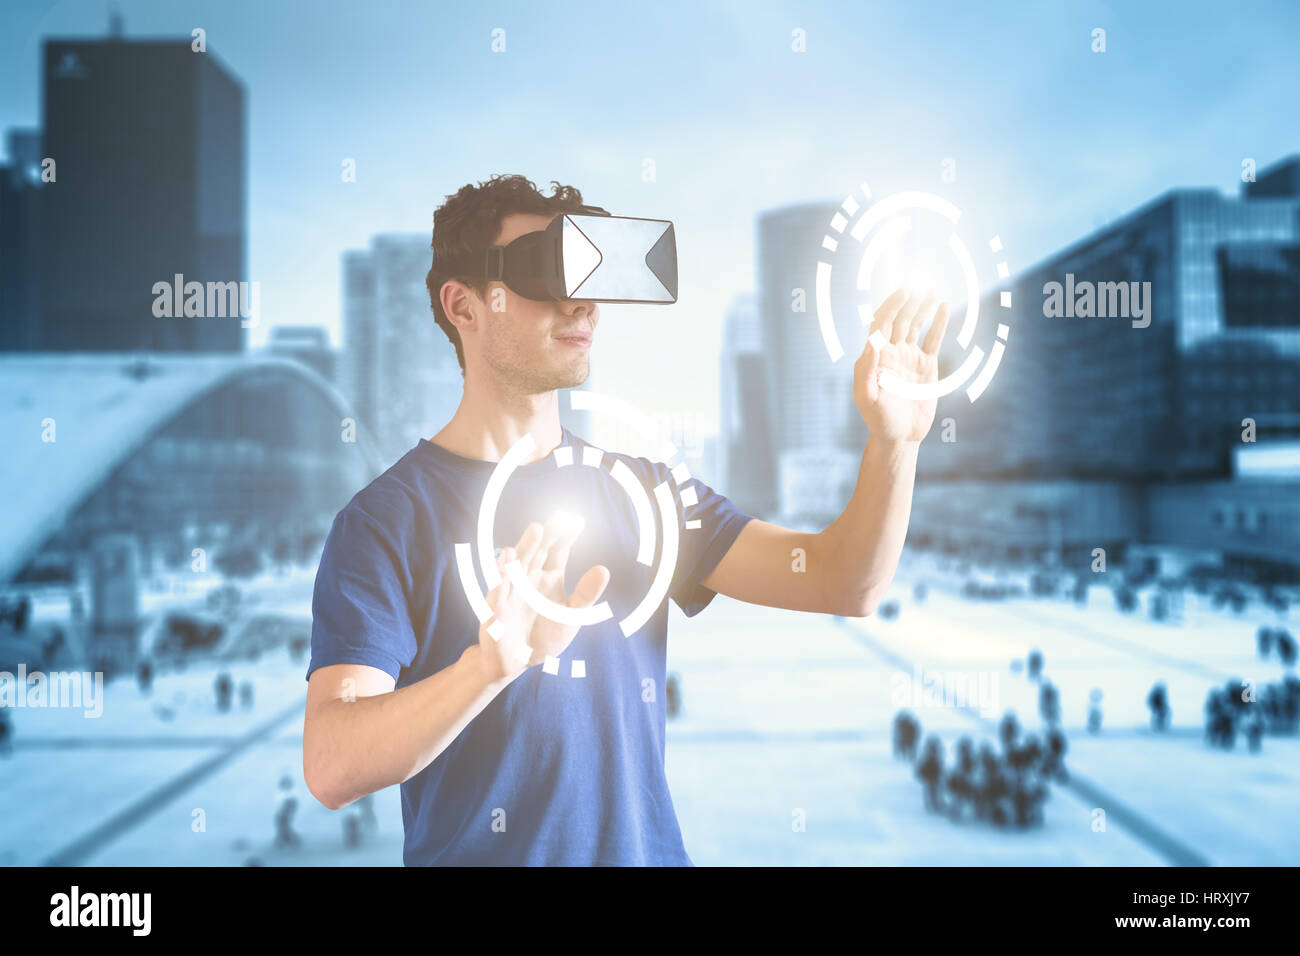 Doble exposición de una persona vestida de realidad virtual (VR) headset o head-Mounted Display (HMD) gafas y tocar los botones y una ciudad de fondo, Foto de stock